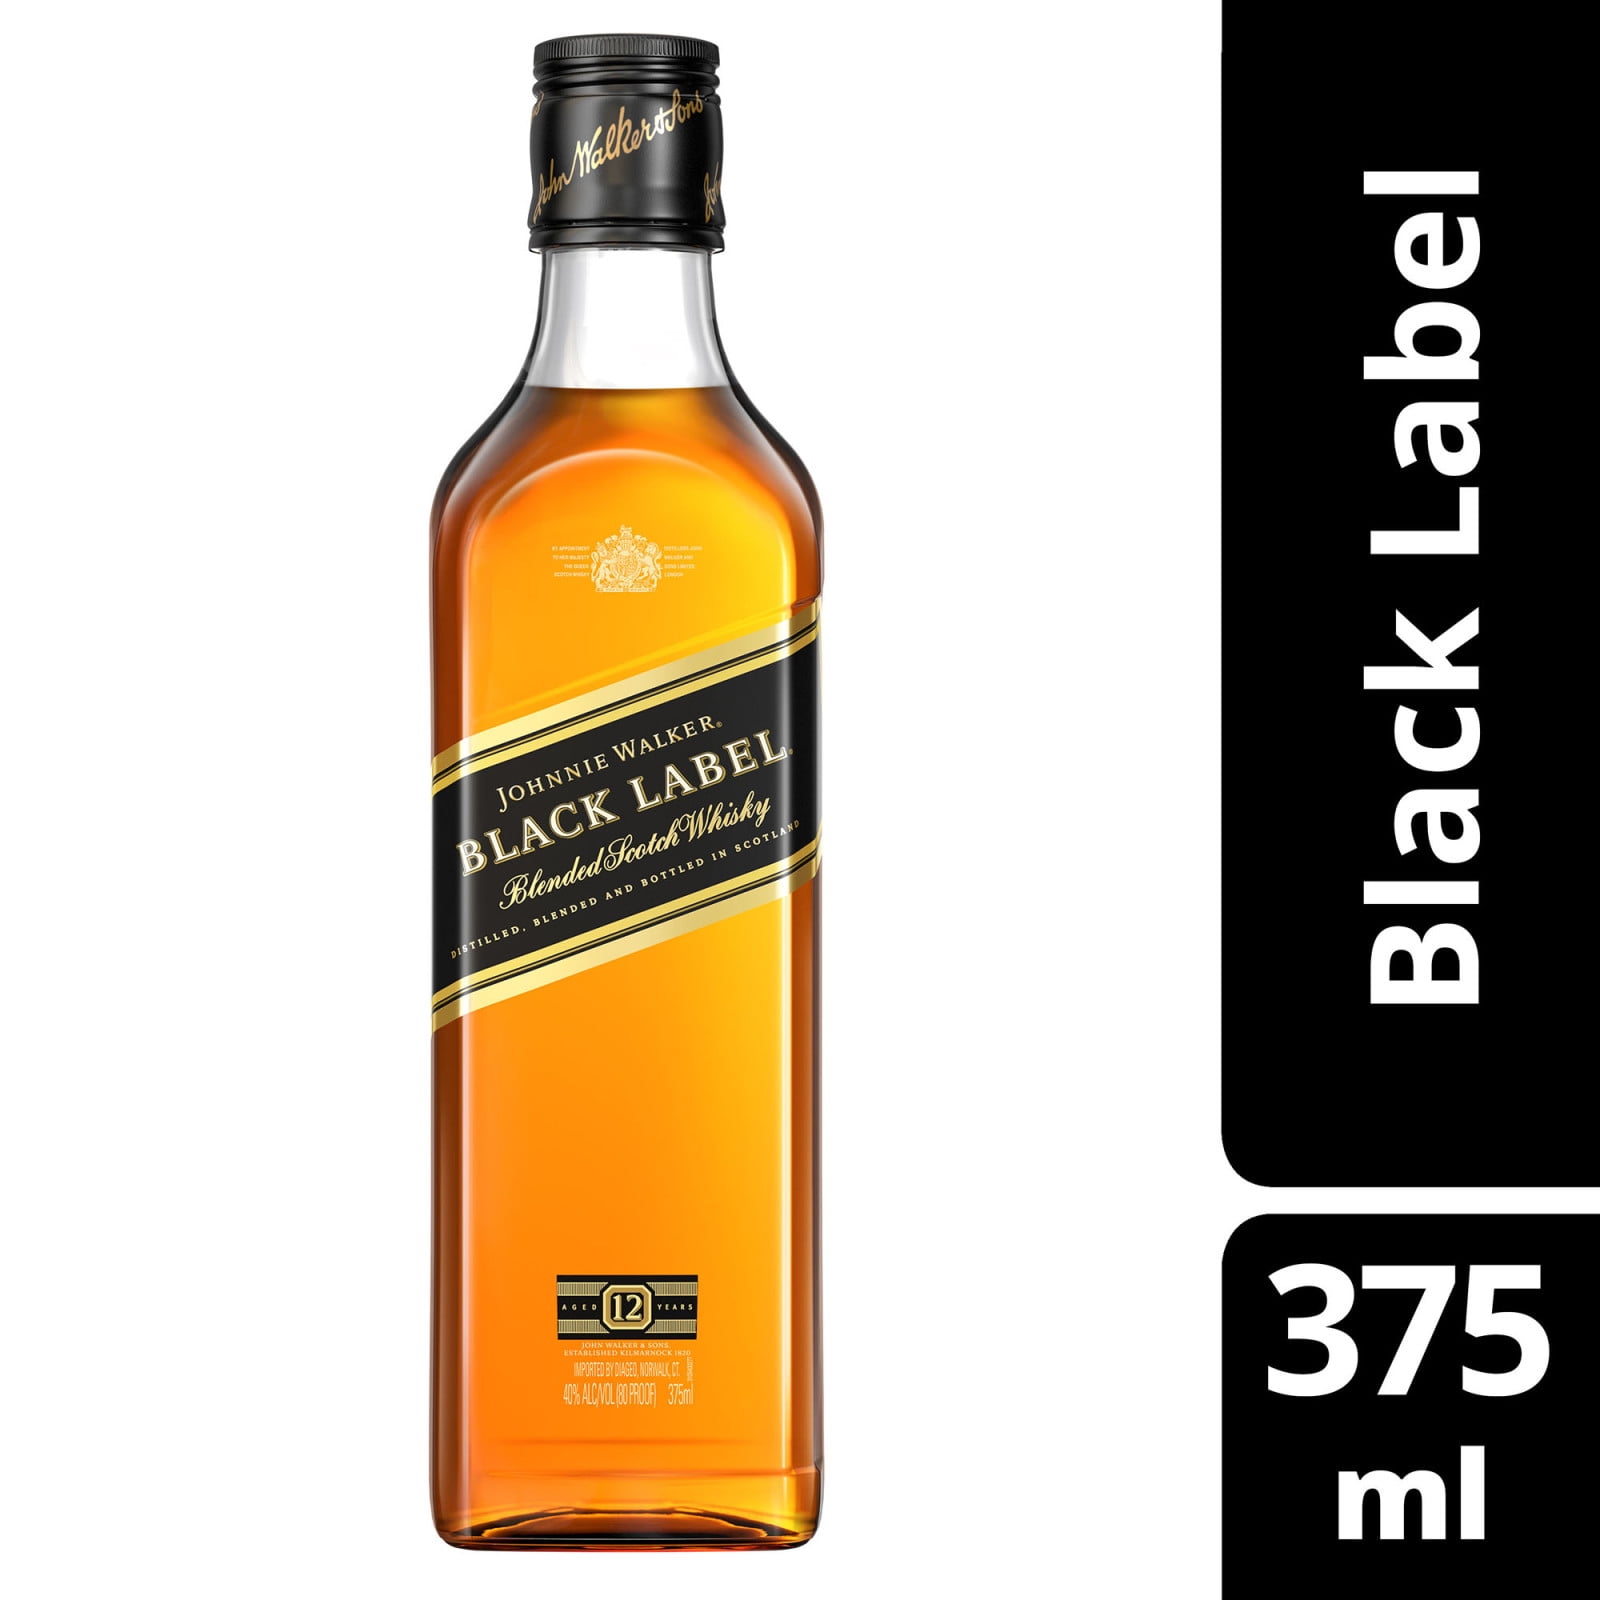 Black Whisky, ml, Label Scotch Blended ABV Walker Johnnie 40% 375